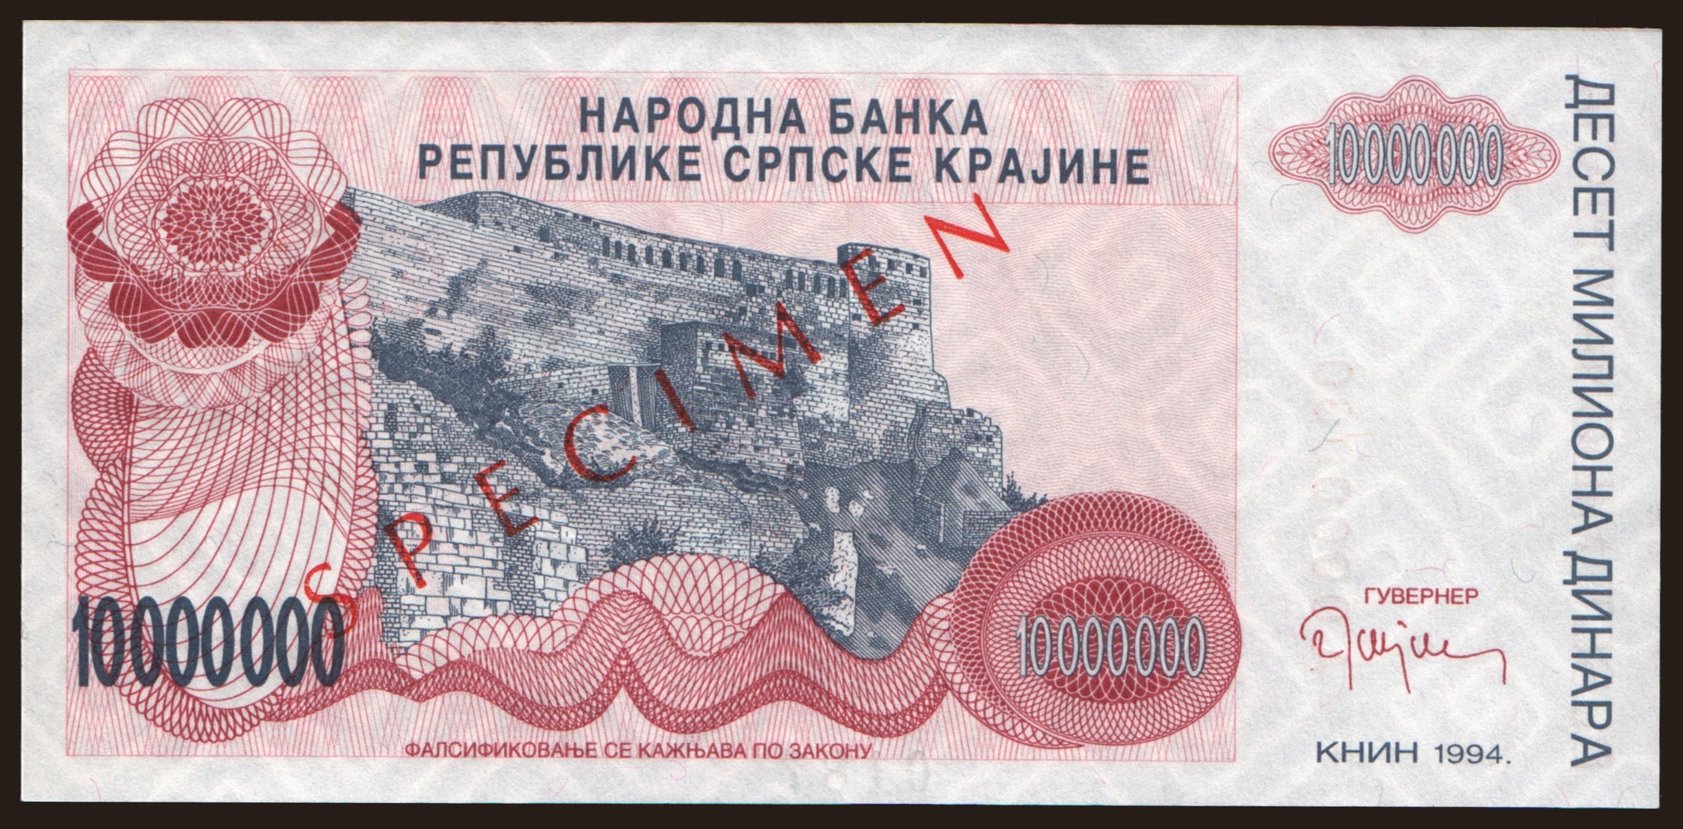 RSK, 10.000.000 dinara, 1994, SPECIMEN